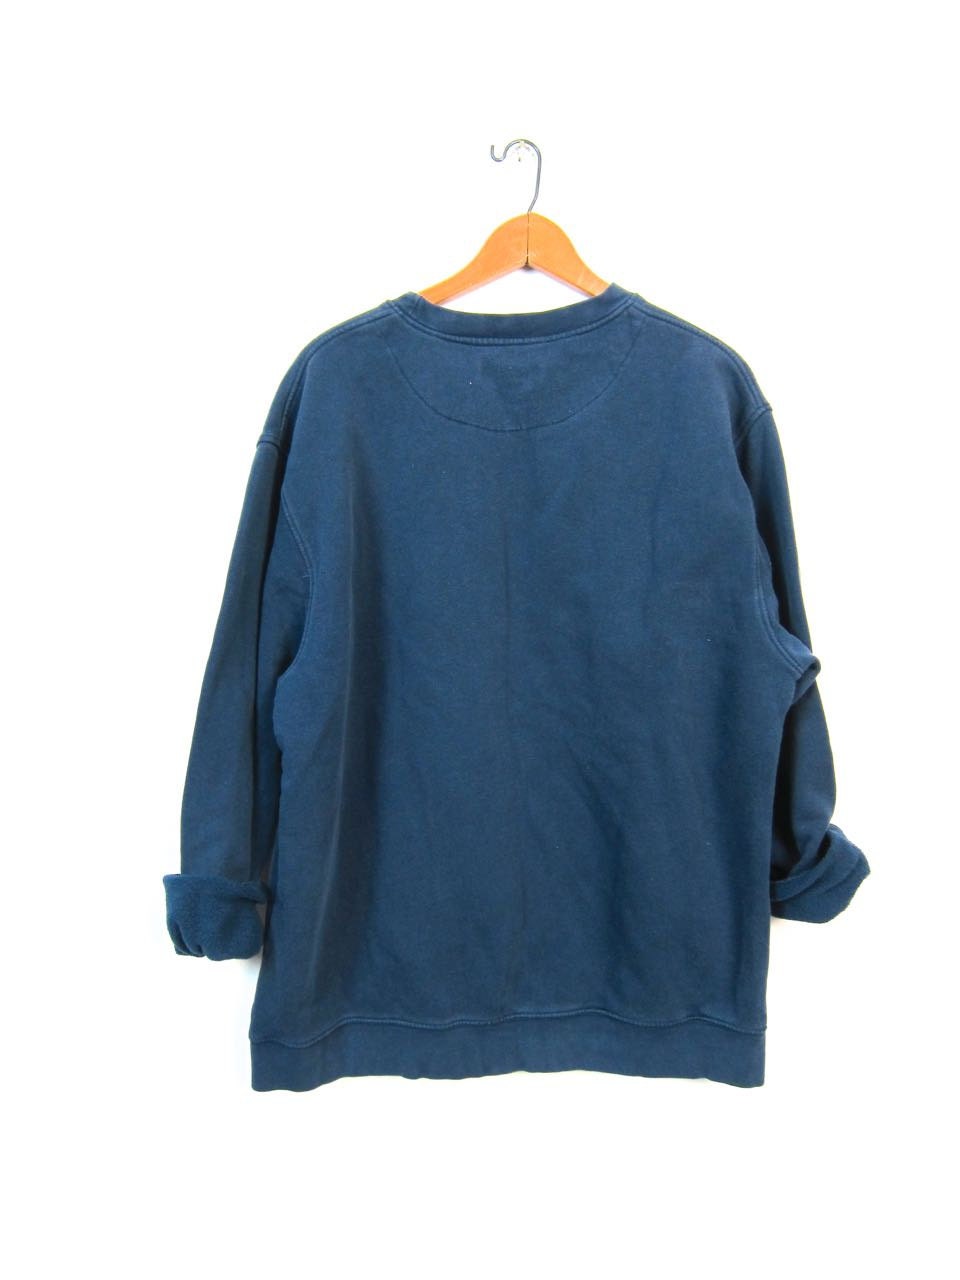 Vintage Navy Blue NIKE Sweatshirt Slouchy by dirtybirdiesvintage